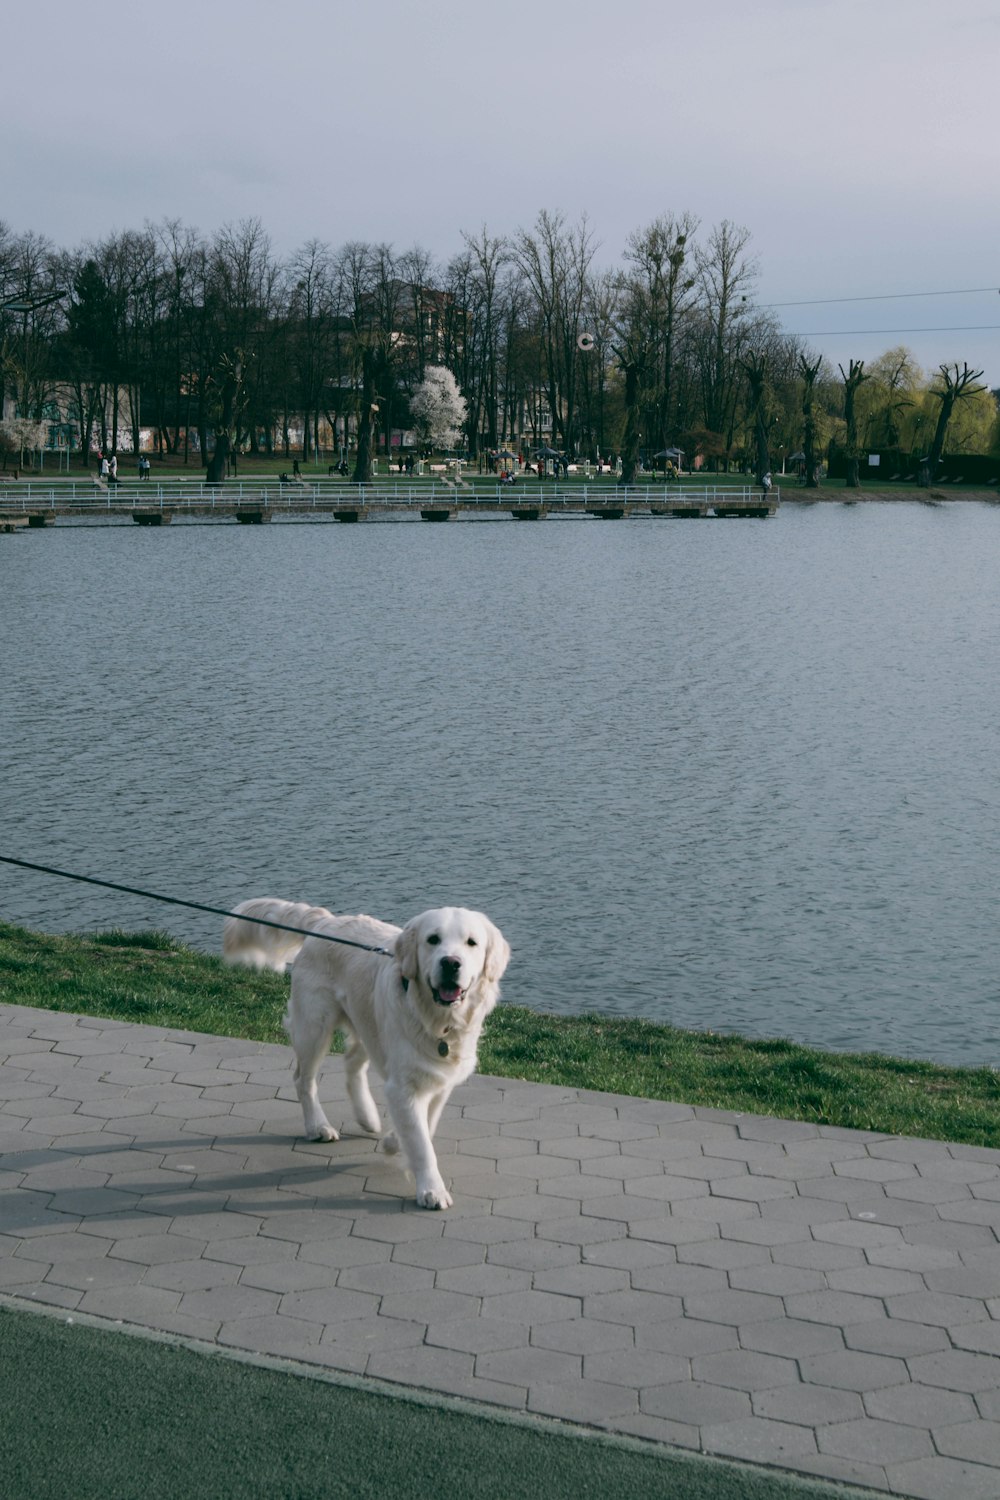 a dog on a leash on a brick path by a body of water